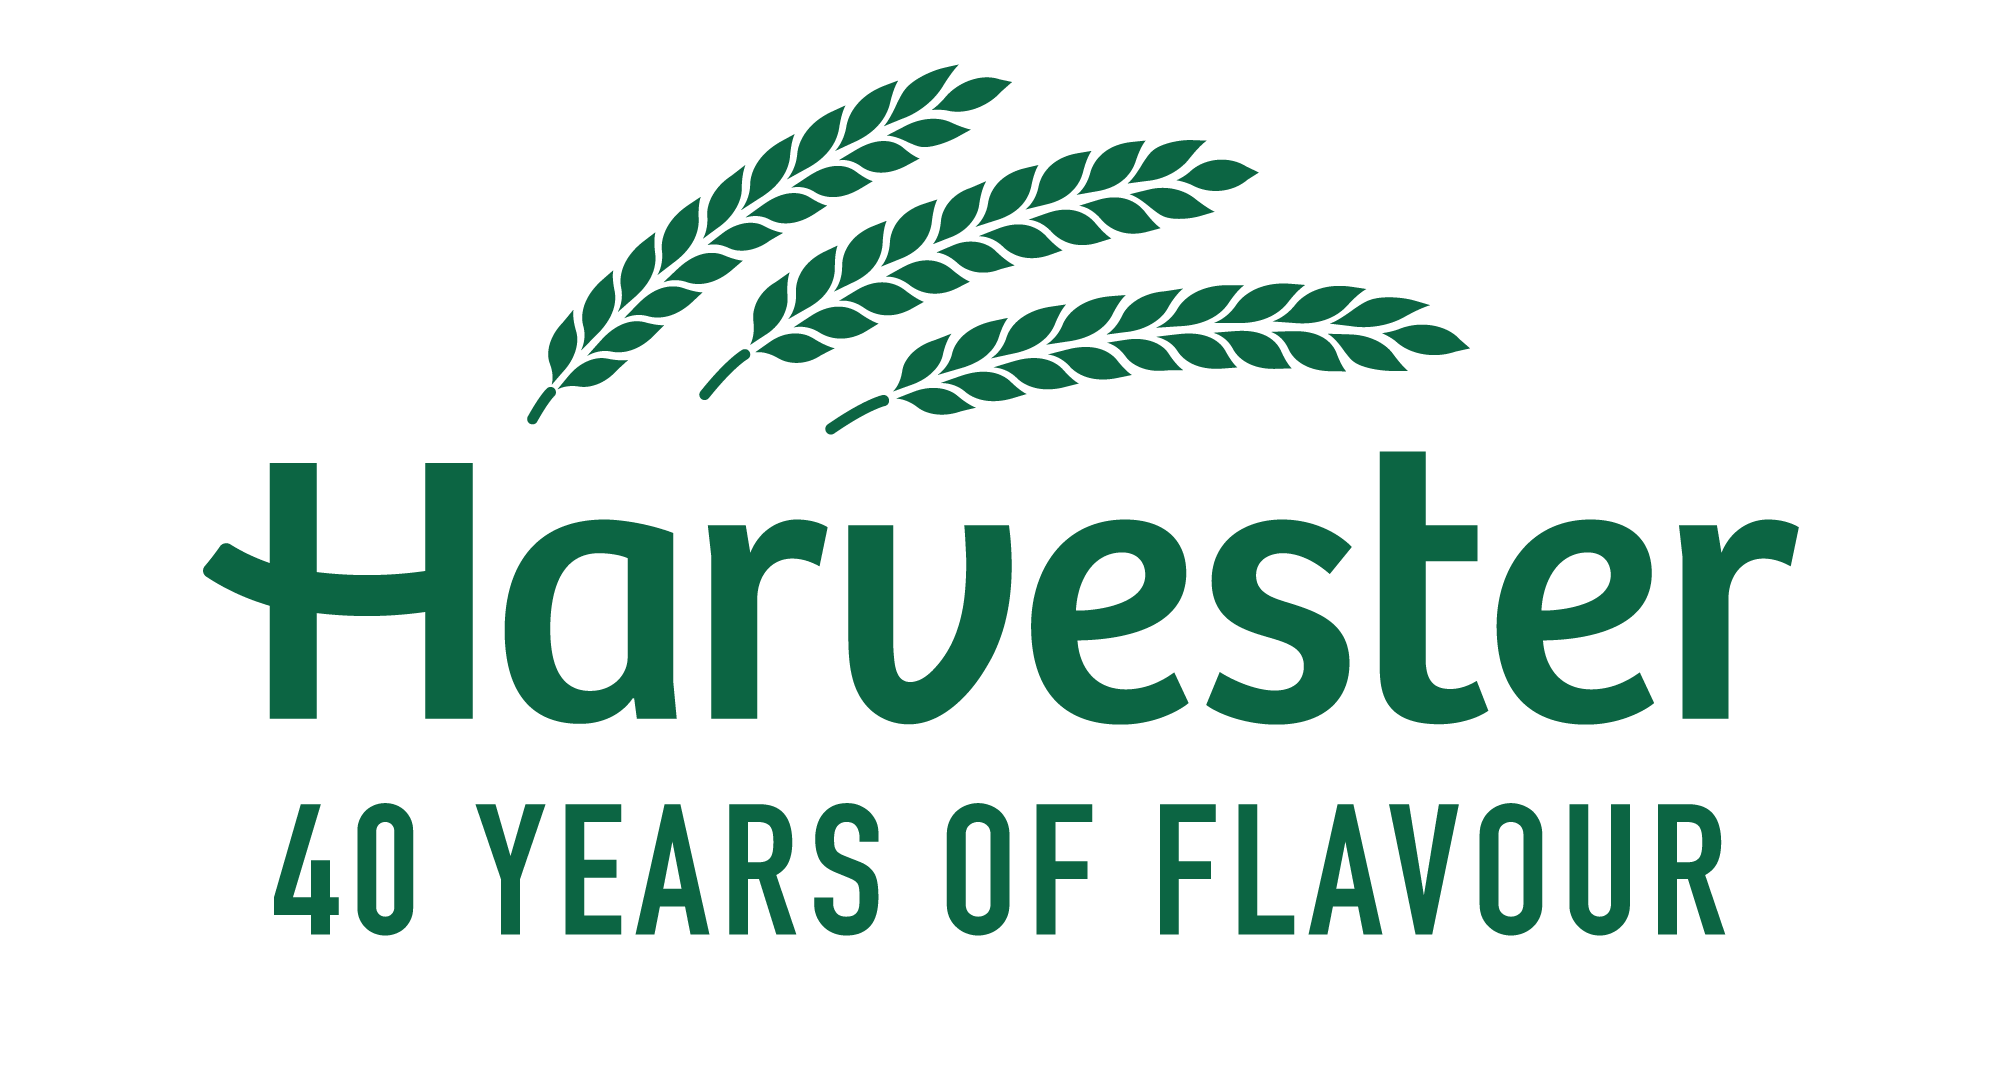 Harvester East Kilbride logo